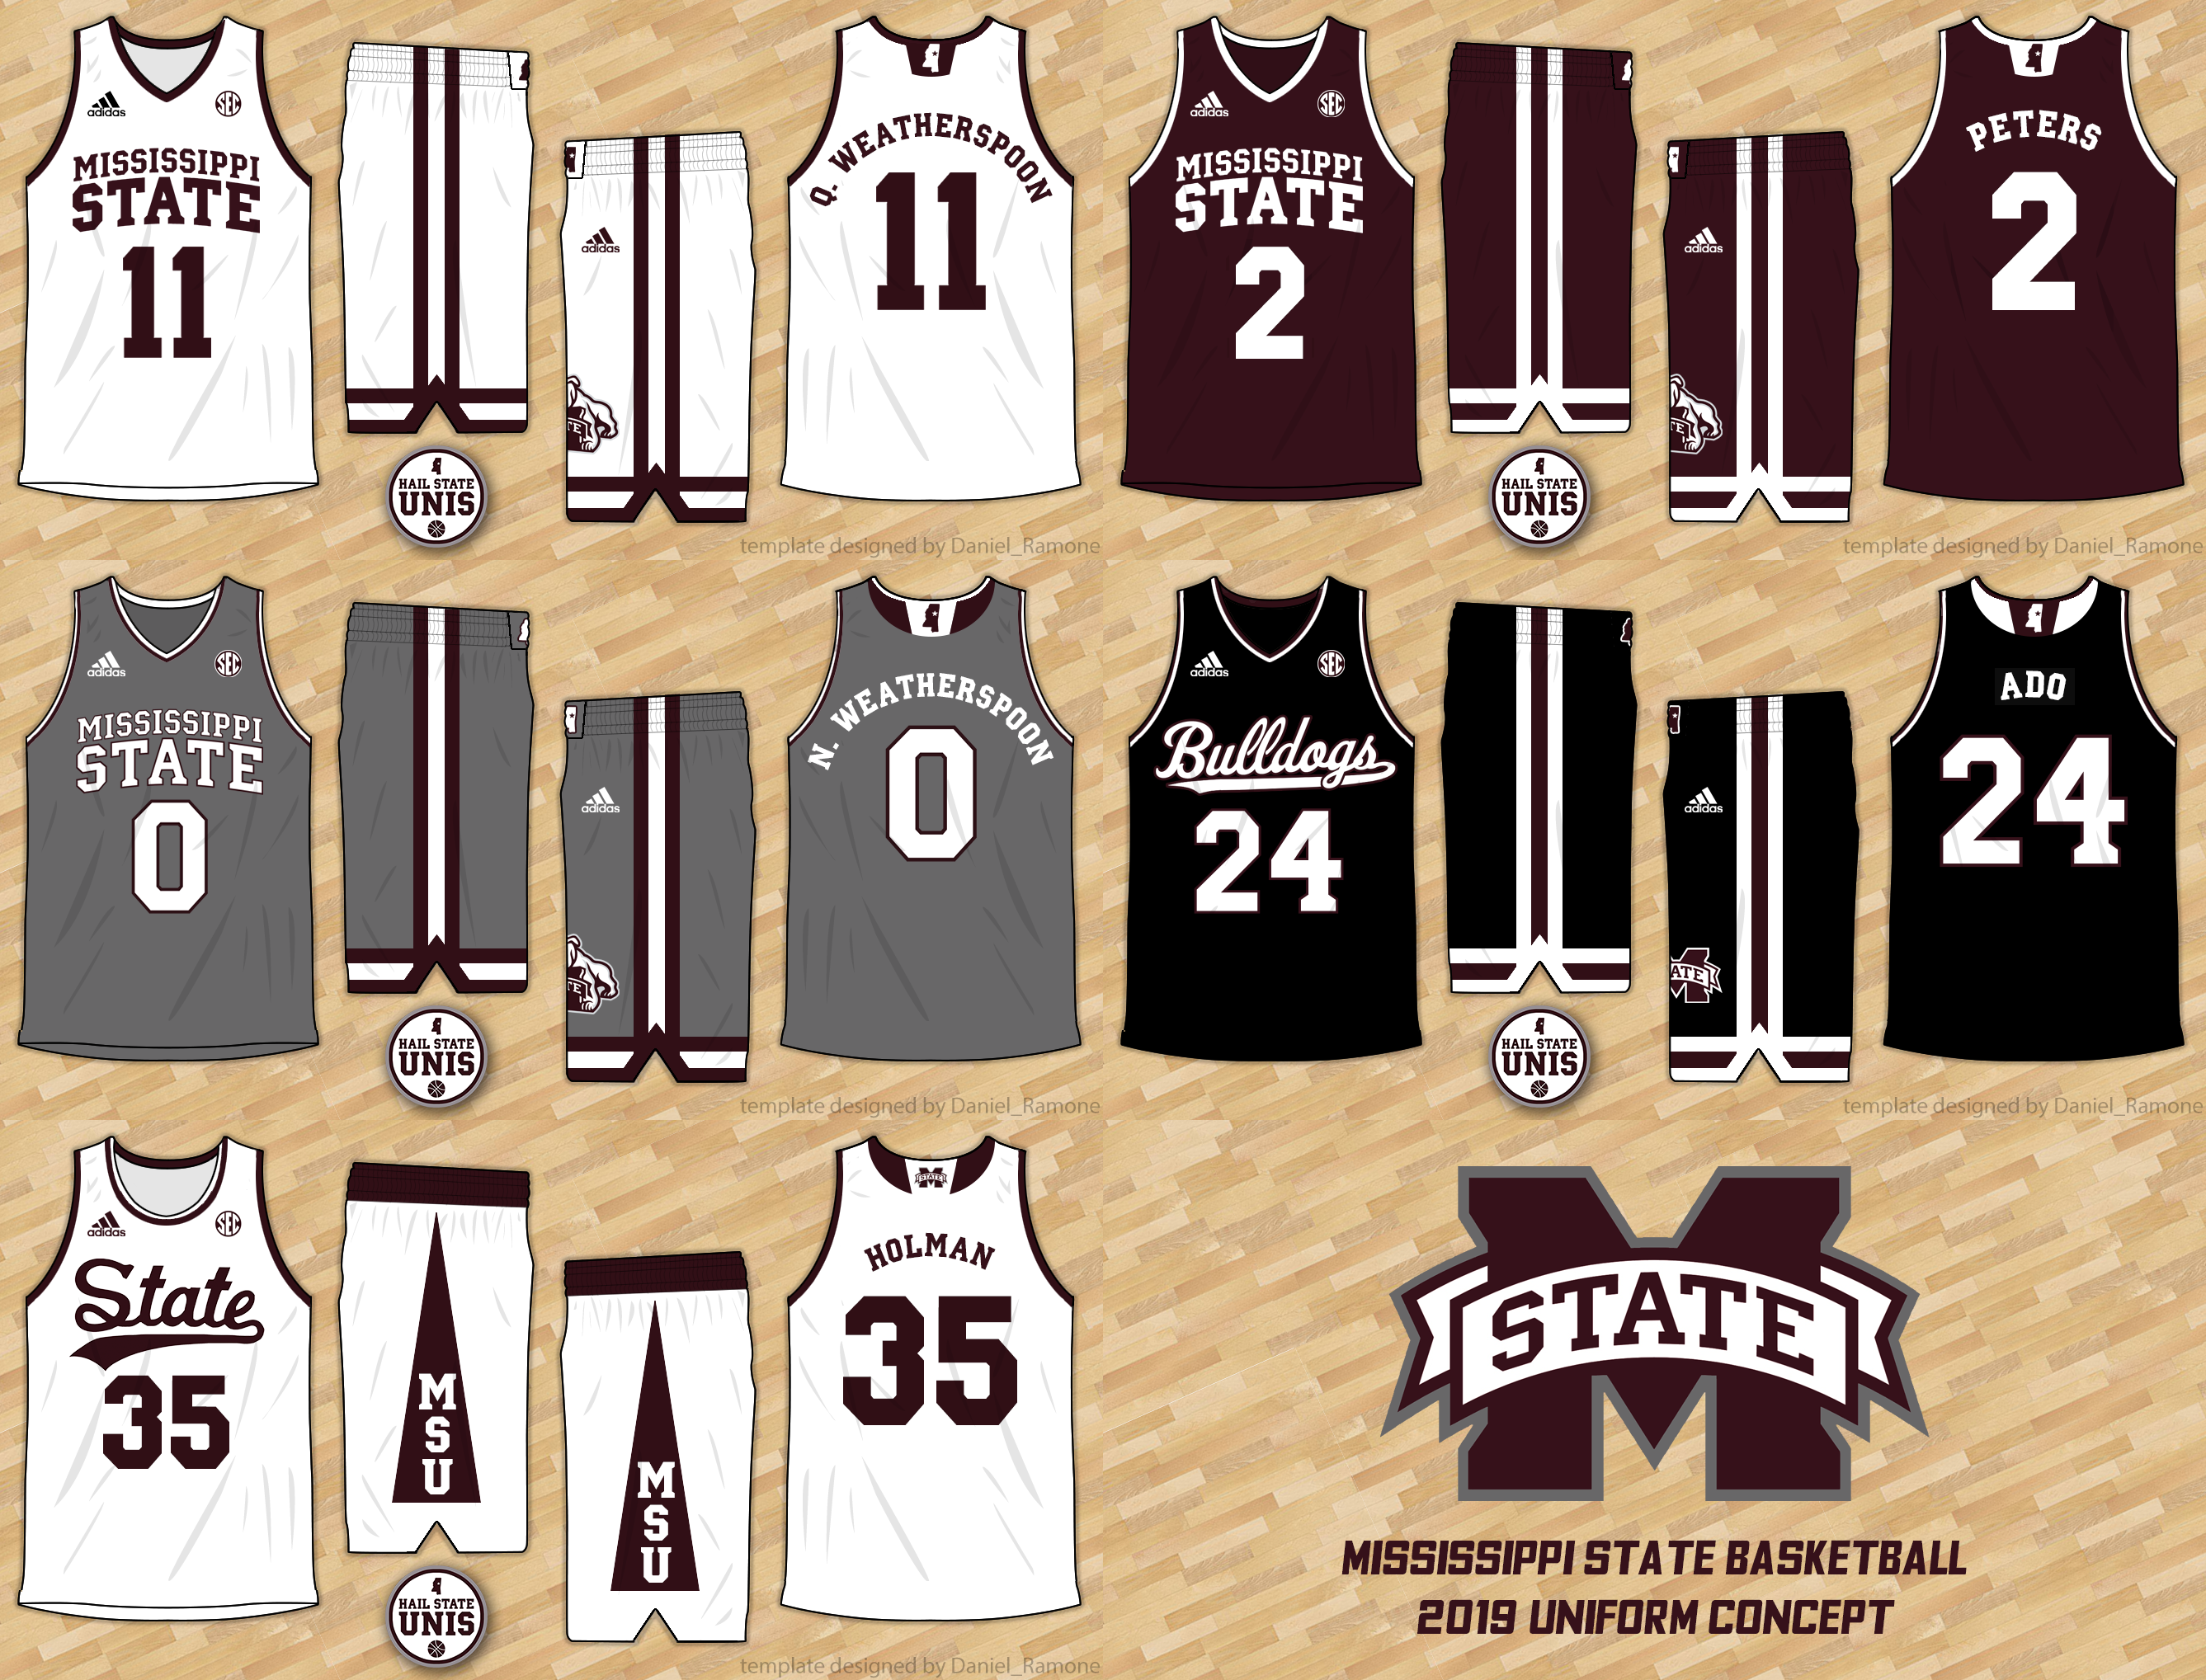 2019 Basketball Uniforms Concept - Hail 